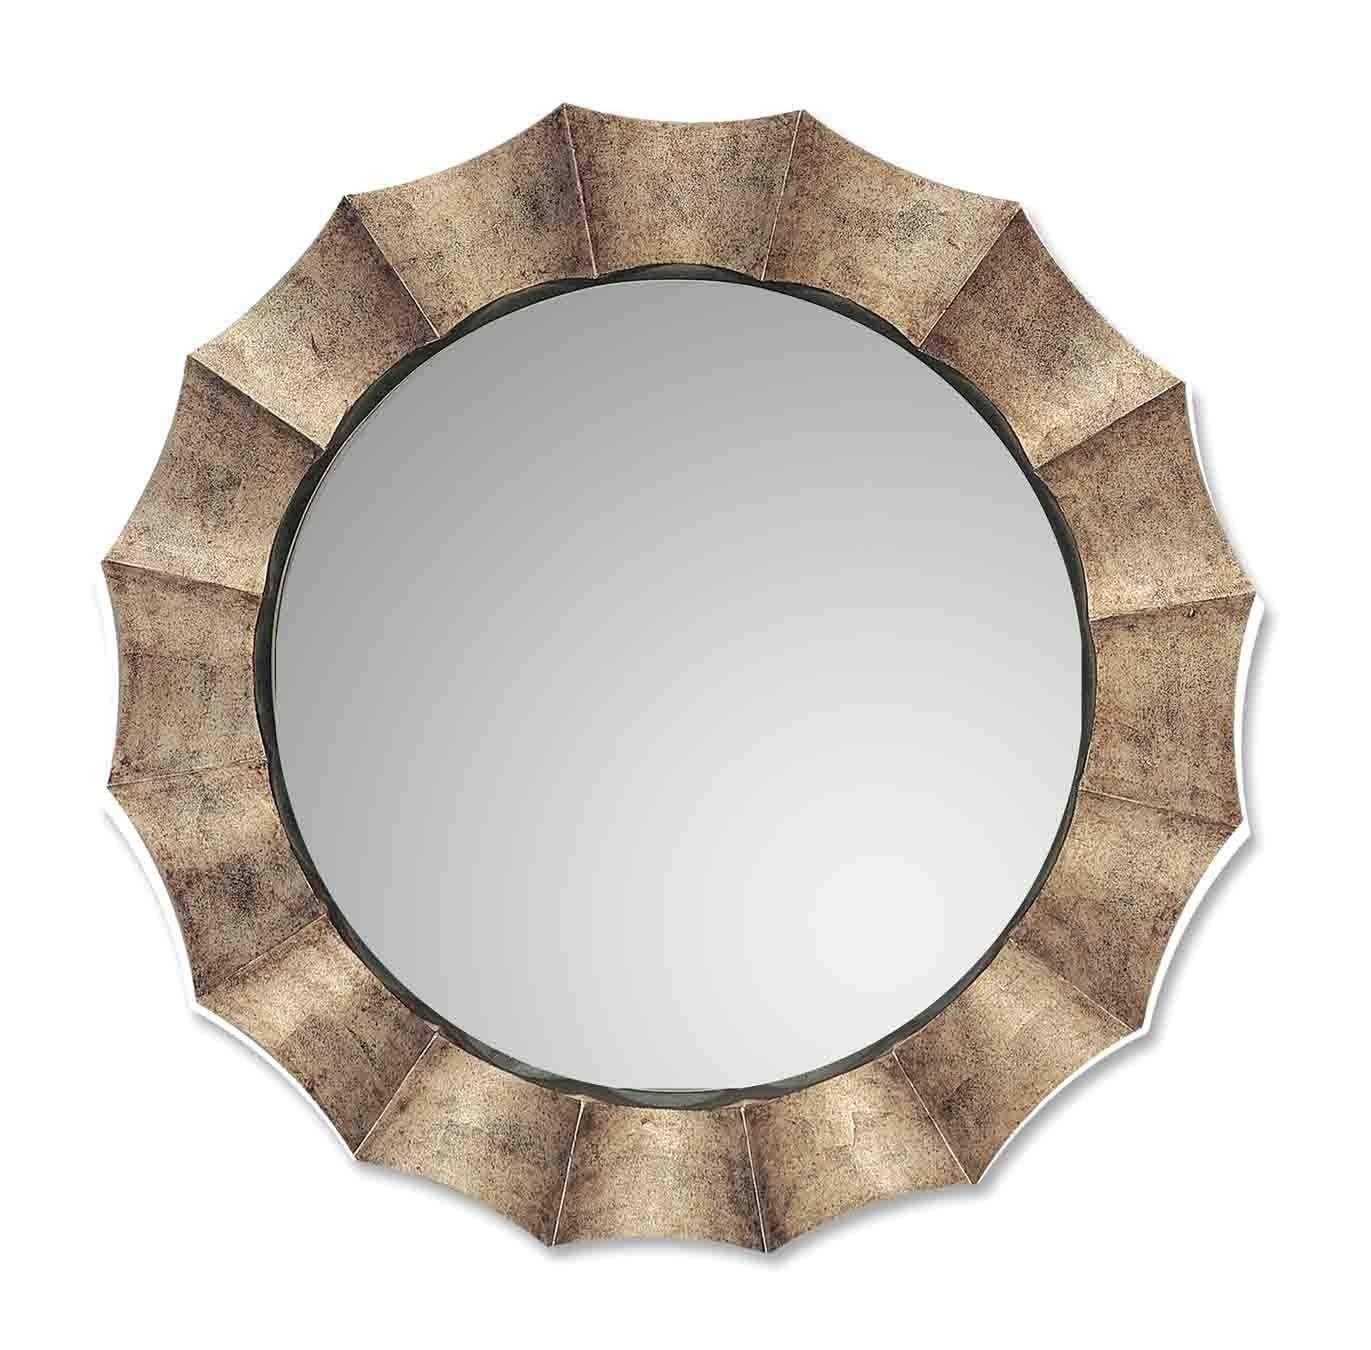 Uttermost Gotham U Antique Silver Mirror 06048 P With Regard To Antique Silver Mirrors (View 12 of 15)